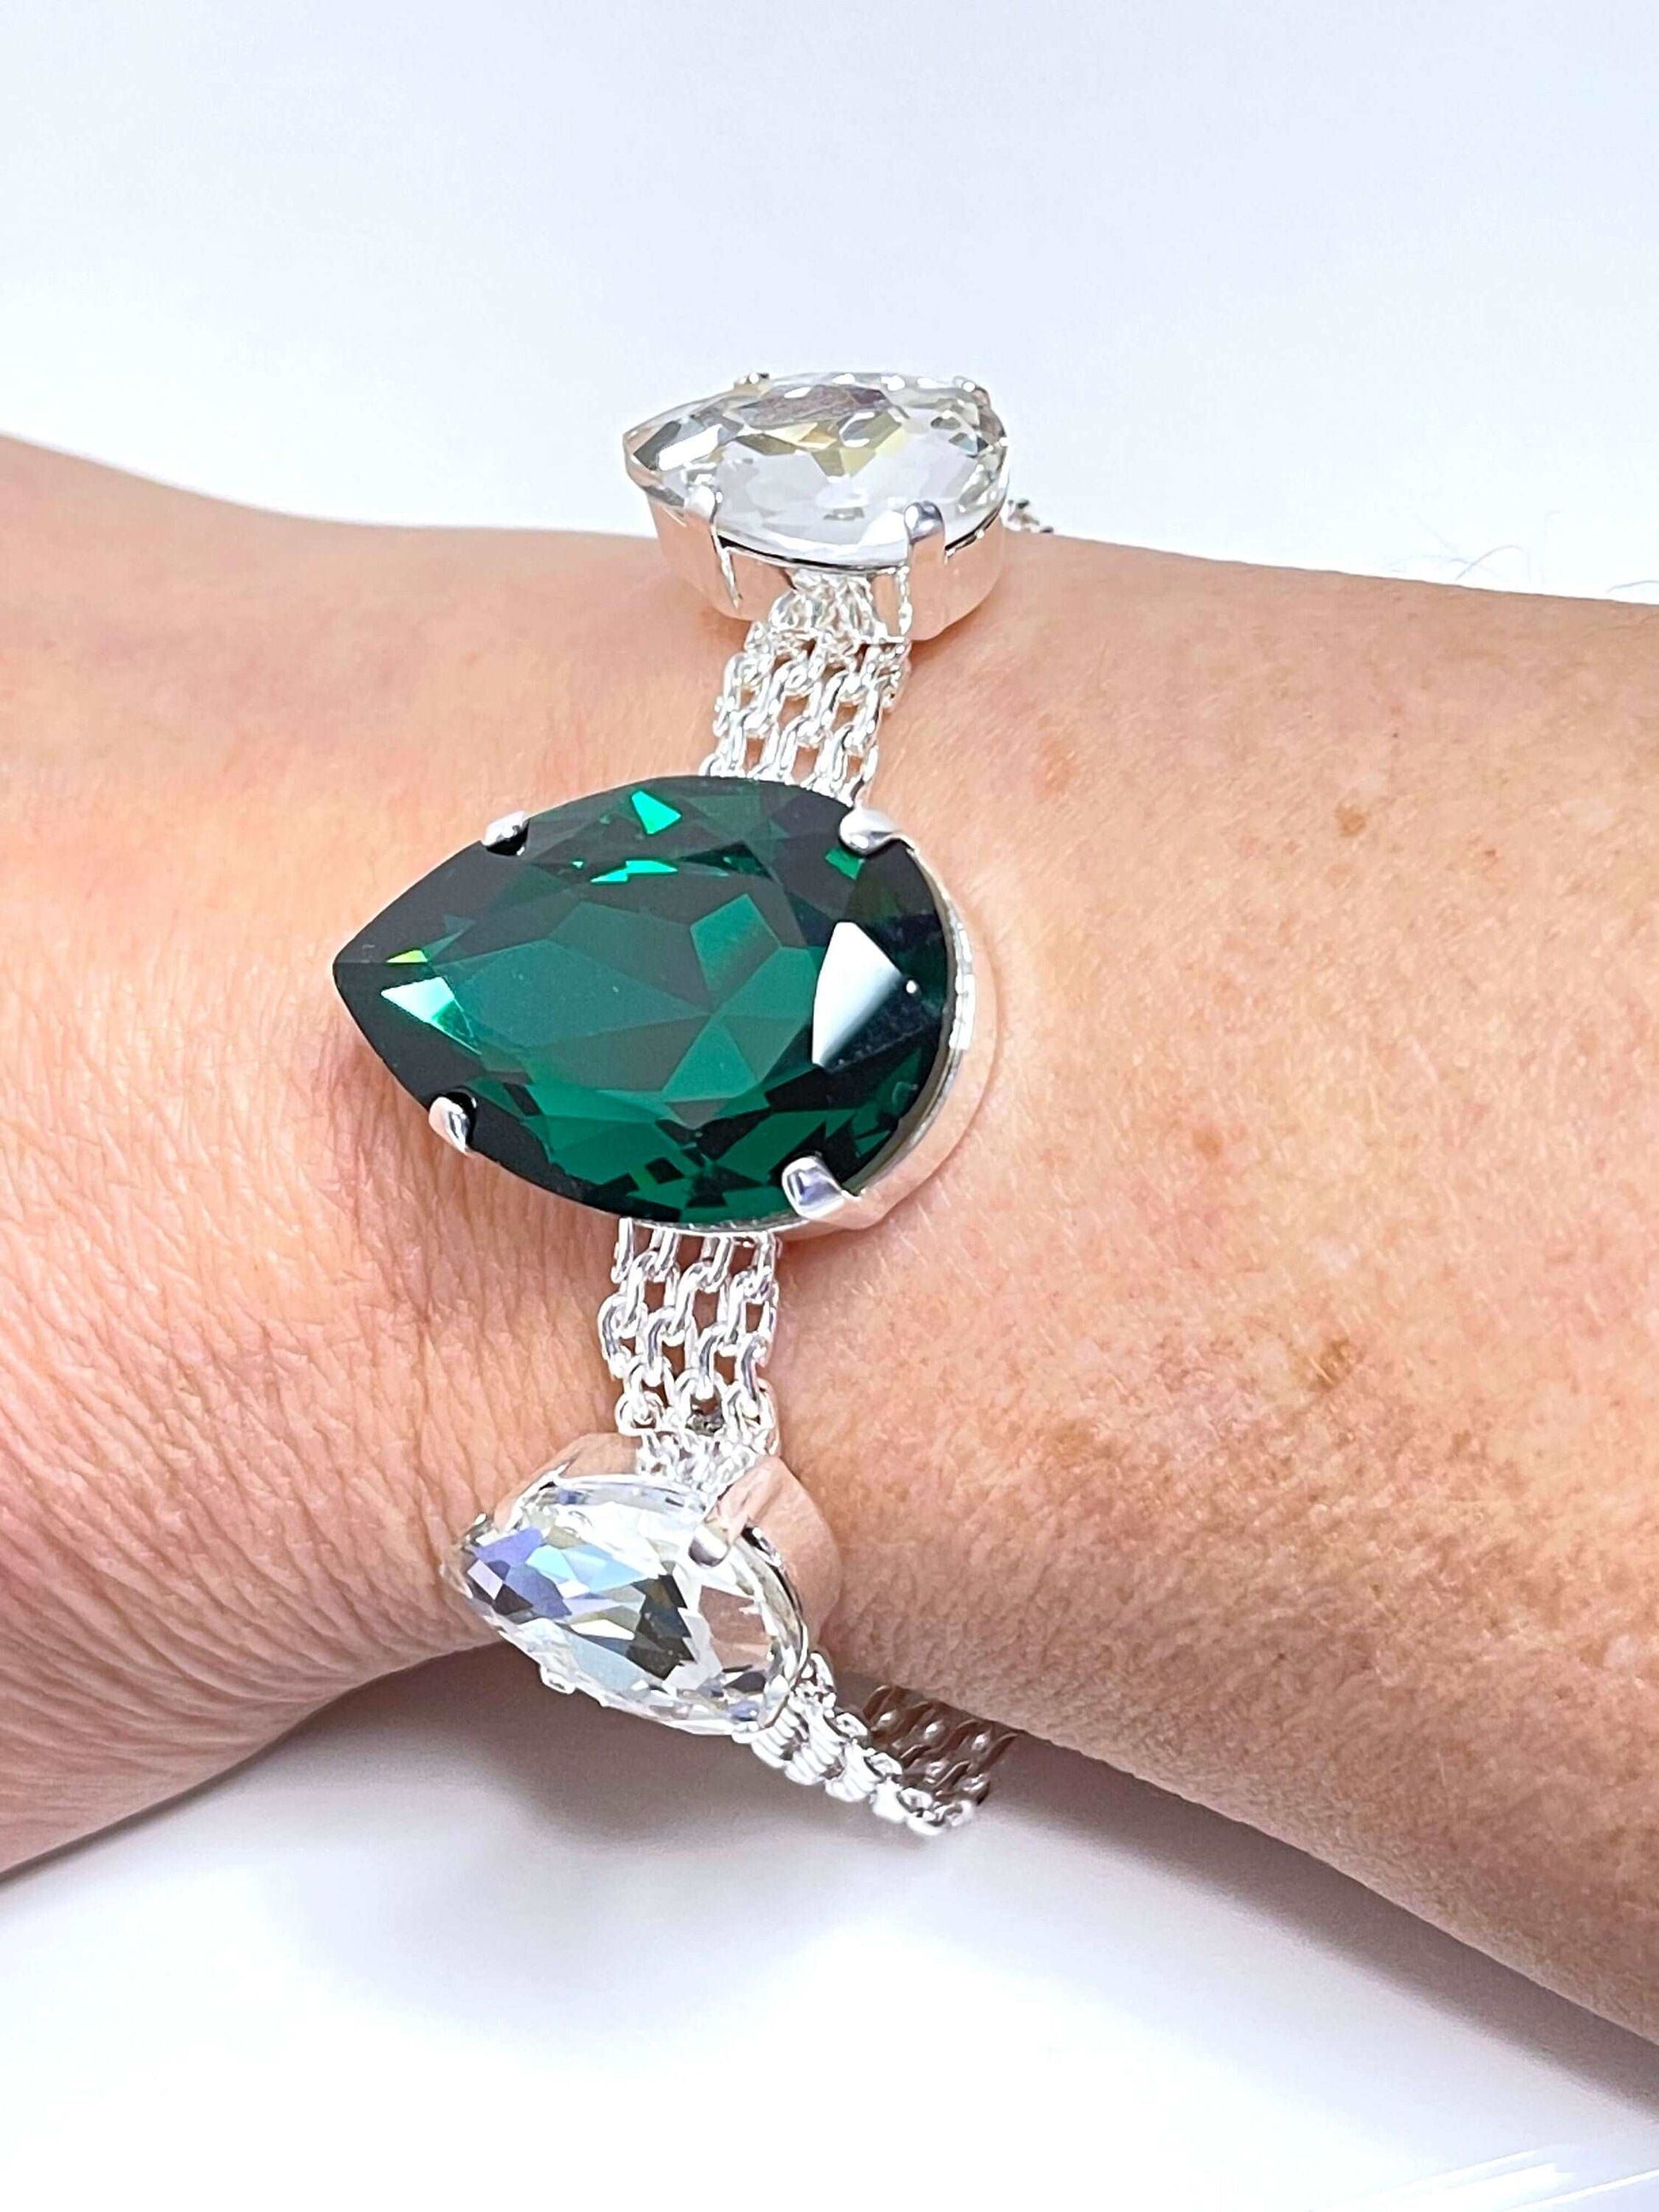 Emerald Crystal Silver Mesh Bracelet, Large Teardrop Cuff, Statement Jewellery, Georgian Style Bracelet, Bracelets for Women